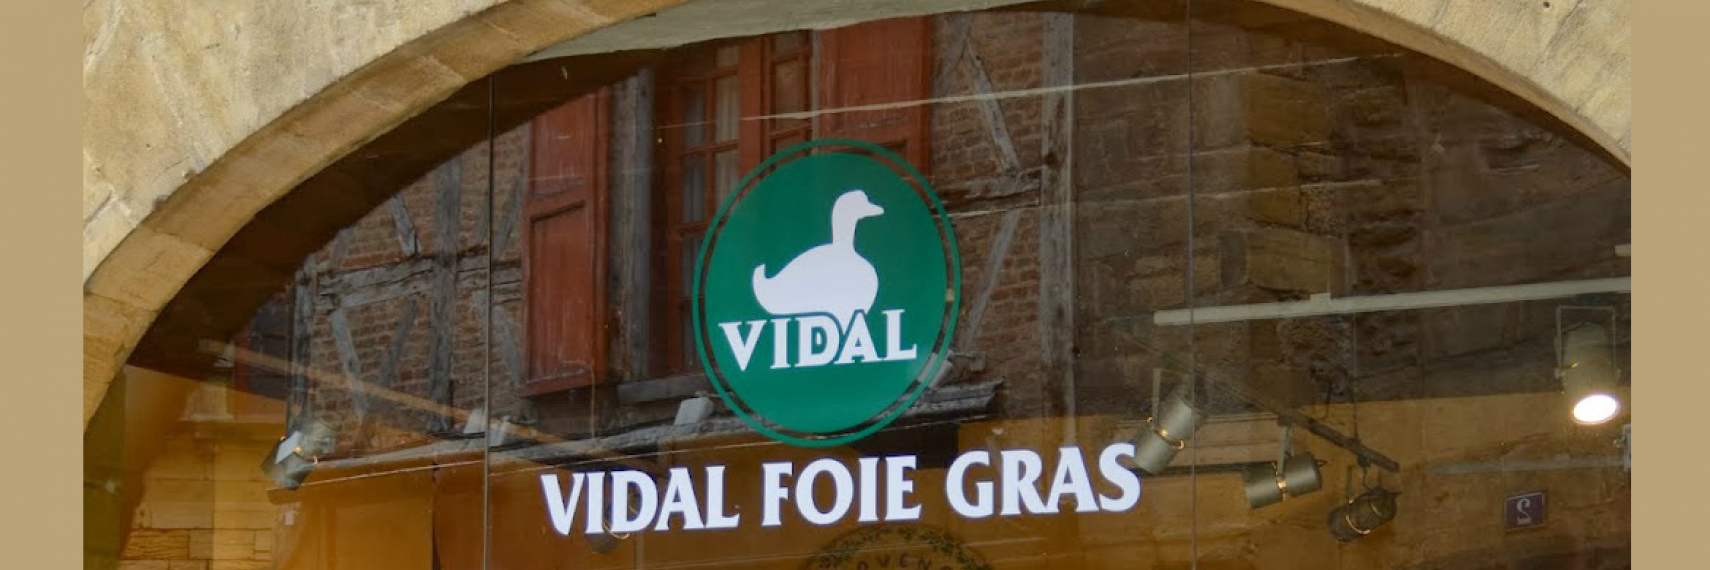 Vidal Foie gras